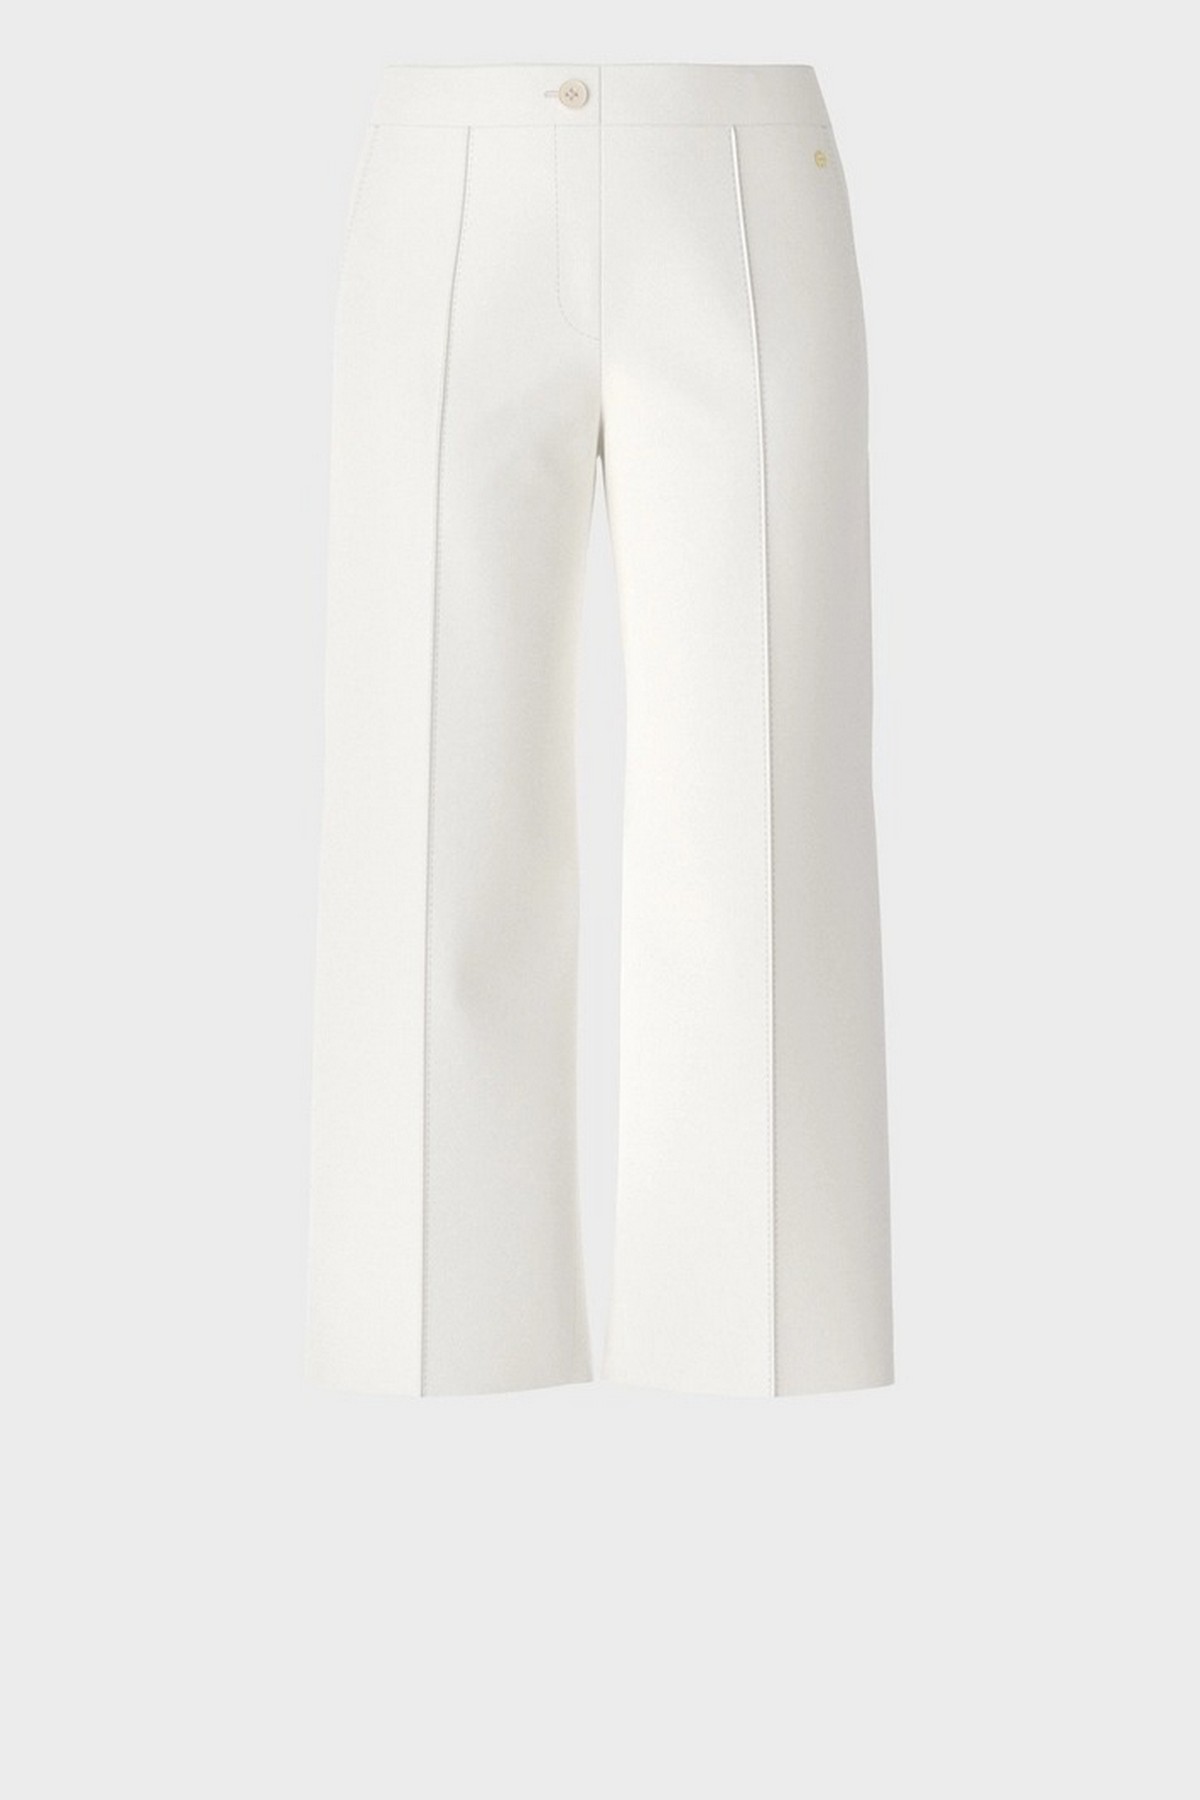 Broek culotte in de kleur off white van het merk Marc Cain Collections